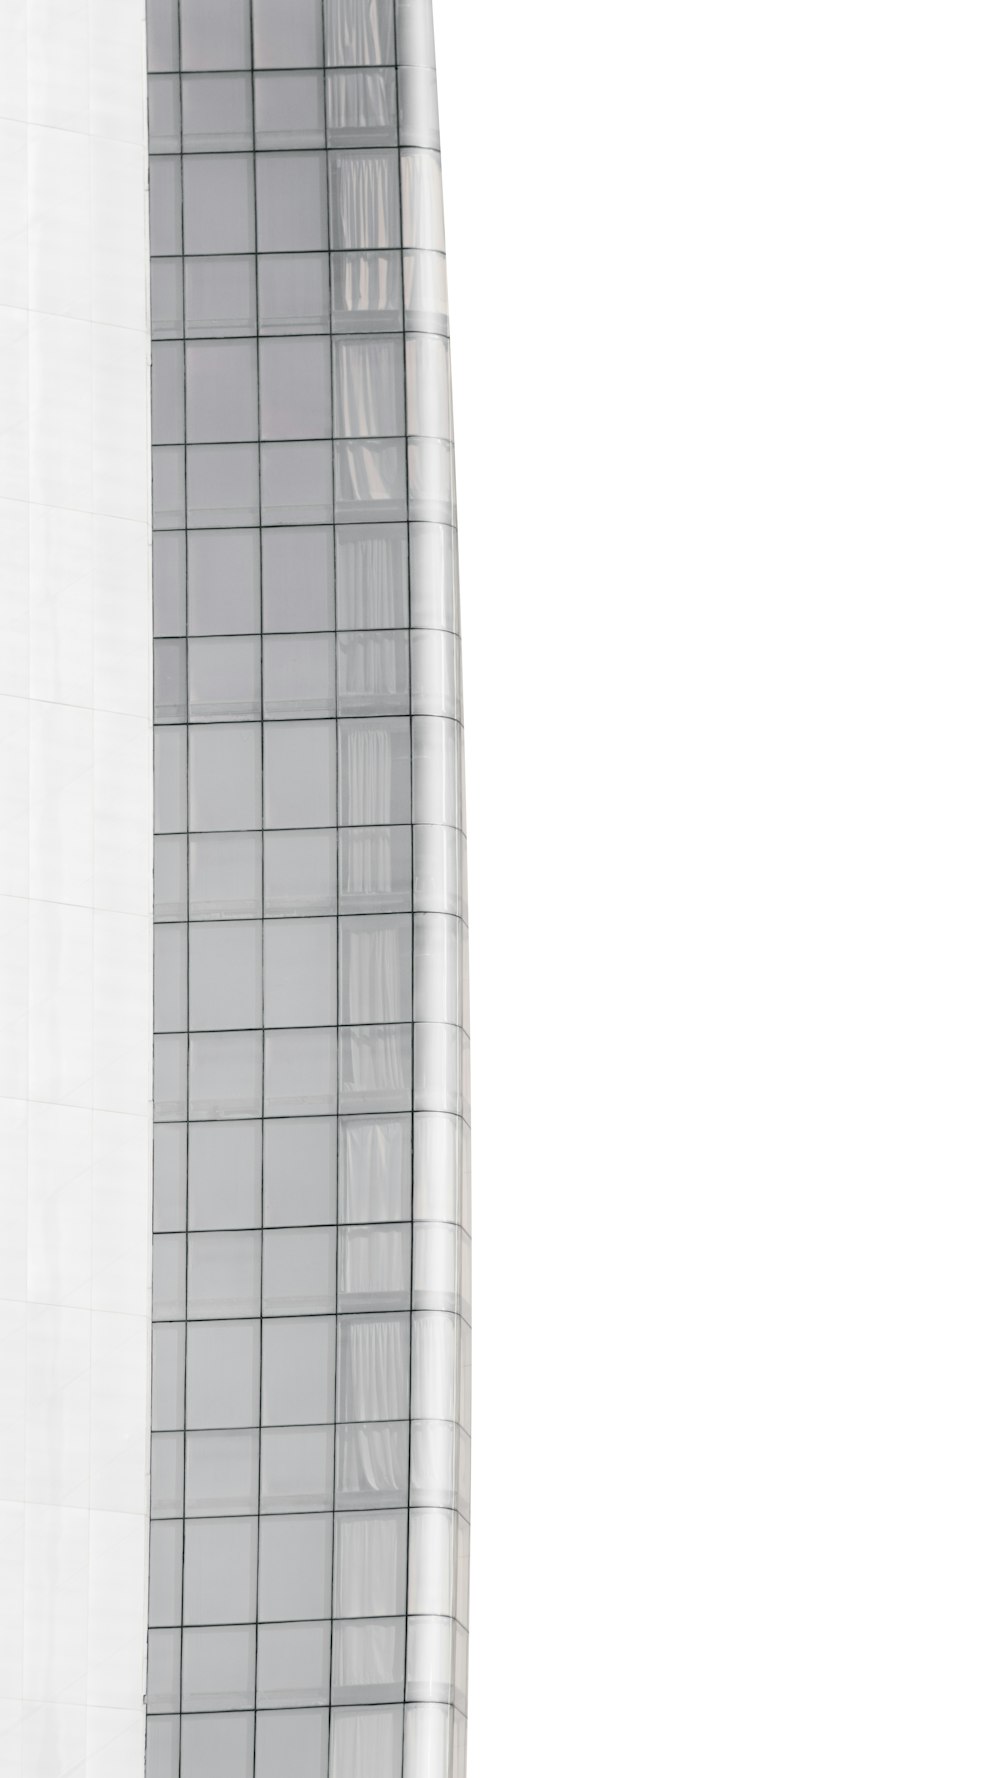 Edificio de hormigón blanco con ventanas de cristal